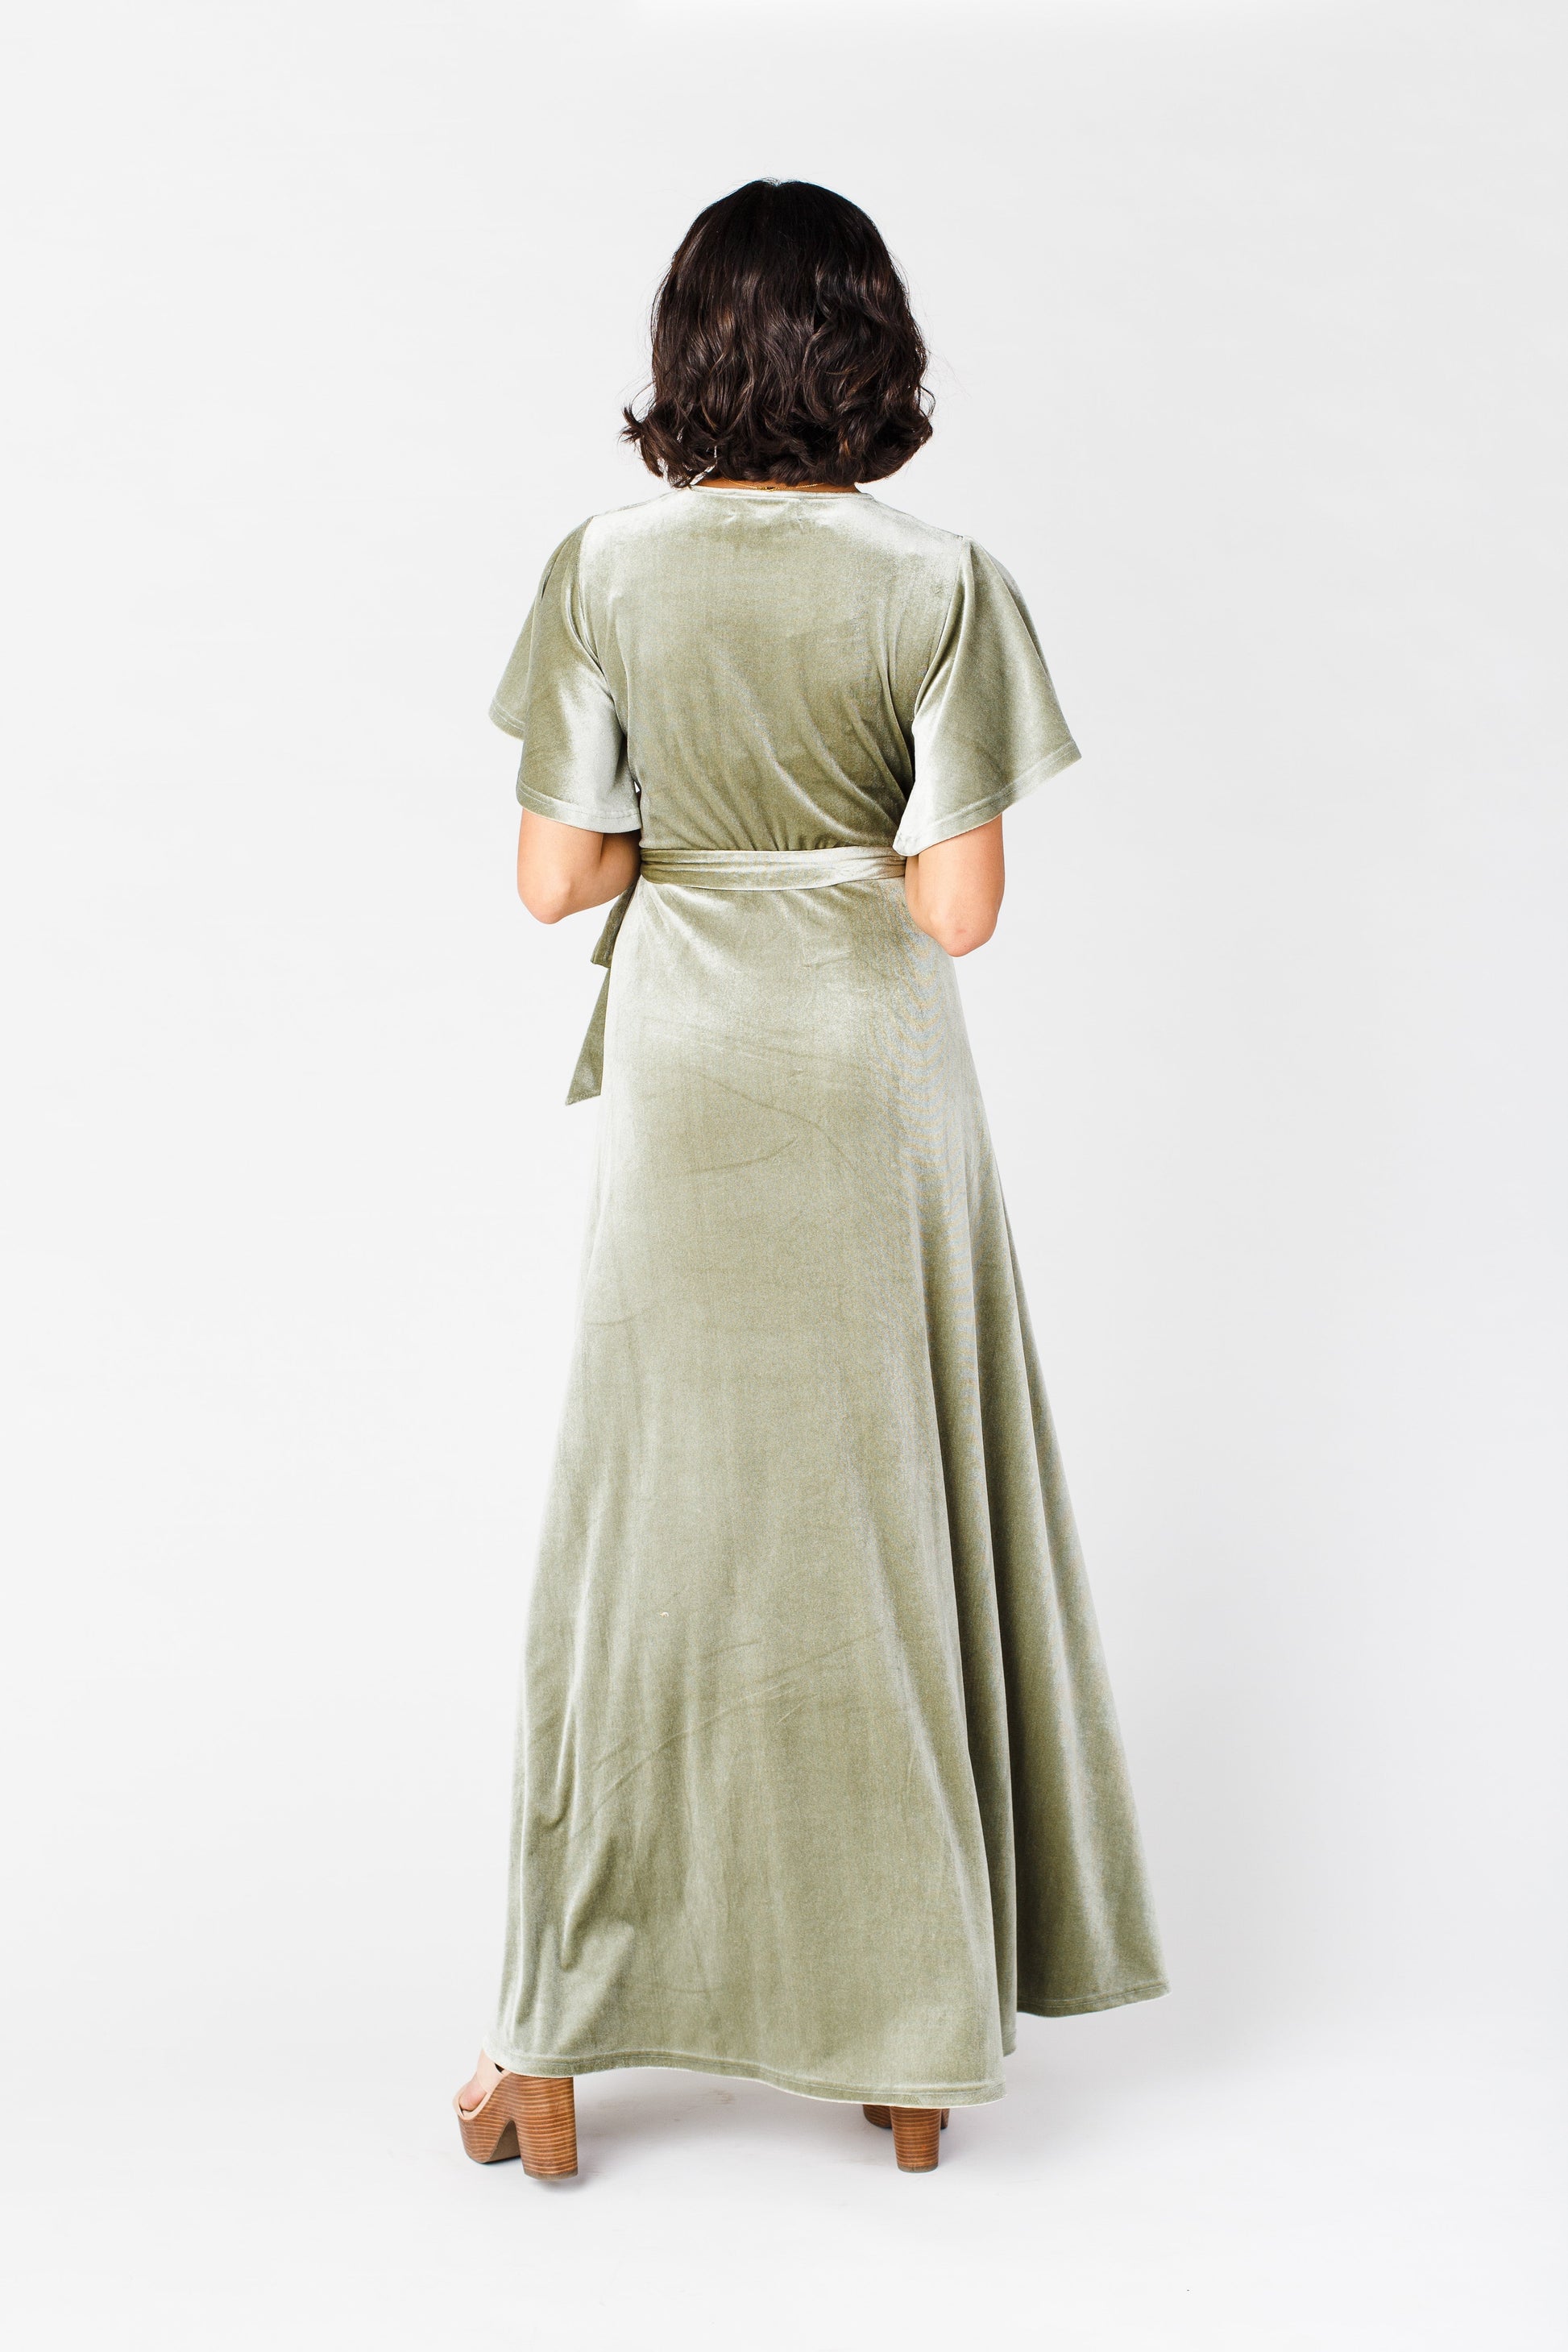 Arbor Velvet Wrap Dress - Sage WOMEN'S DRESS brass & roe 